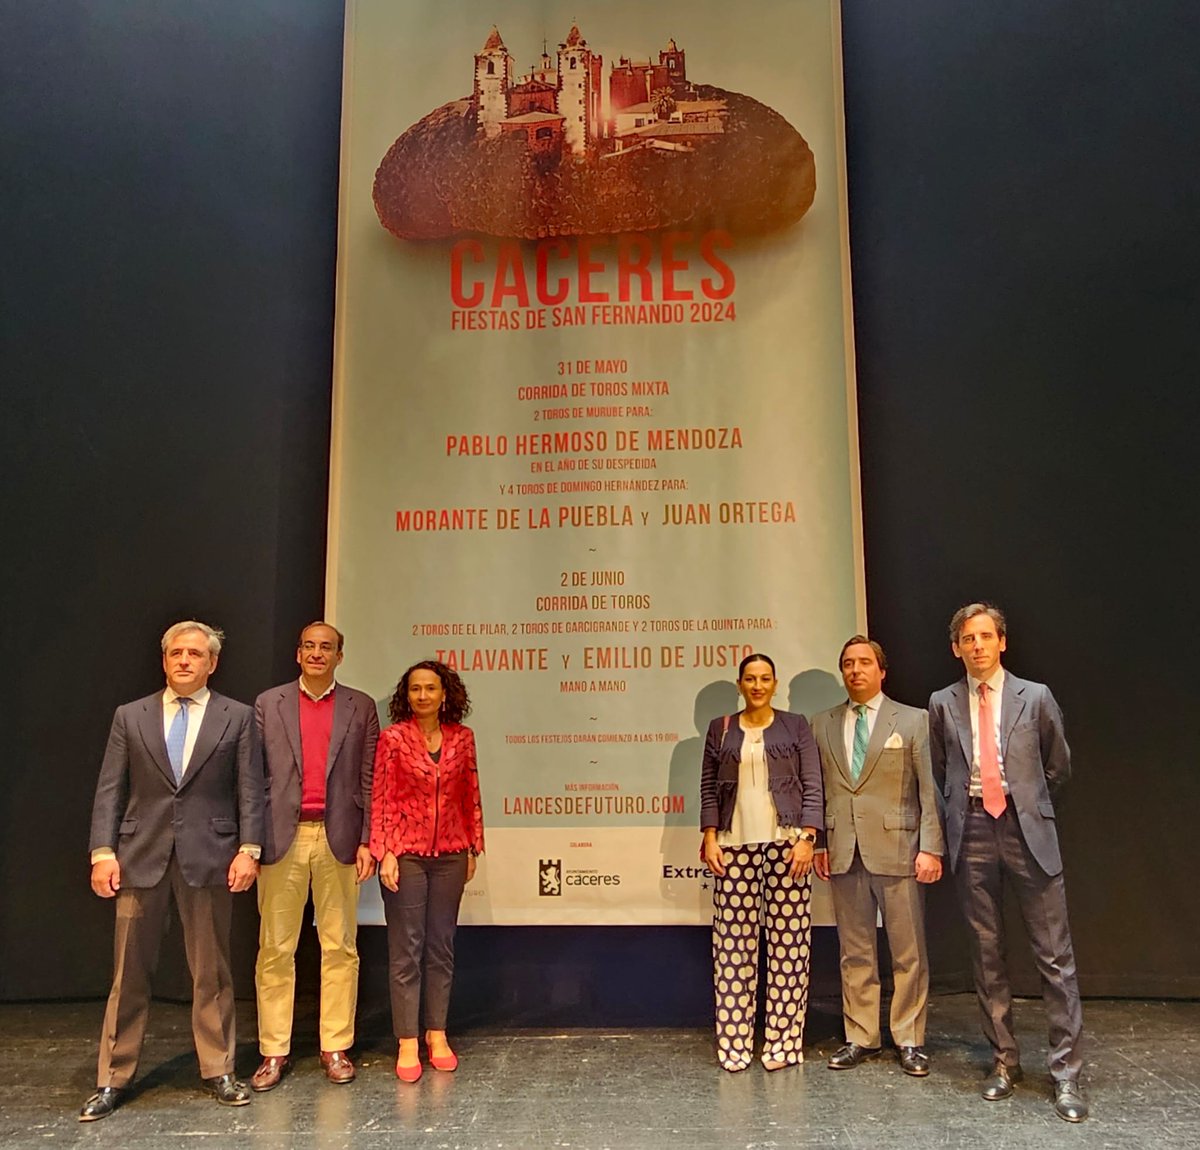 La presidenta del @TSJEXT, María Félix Tena Aragón, asiste a la gala de presentación del cartel taurino de las Ferias de San Fernando de Cáceres.